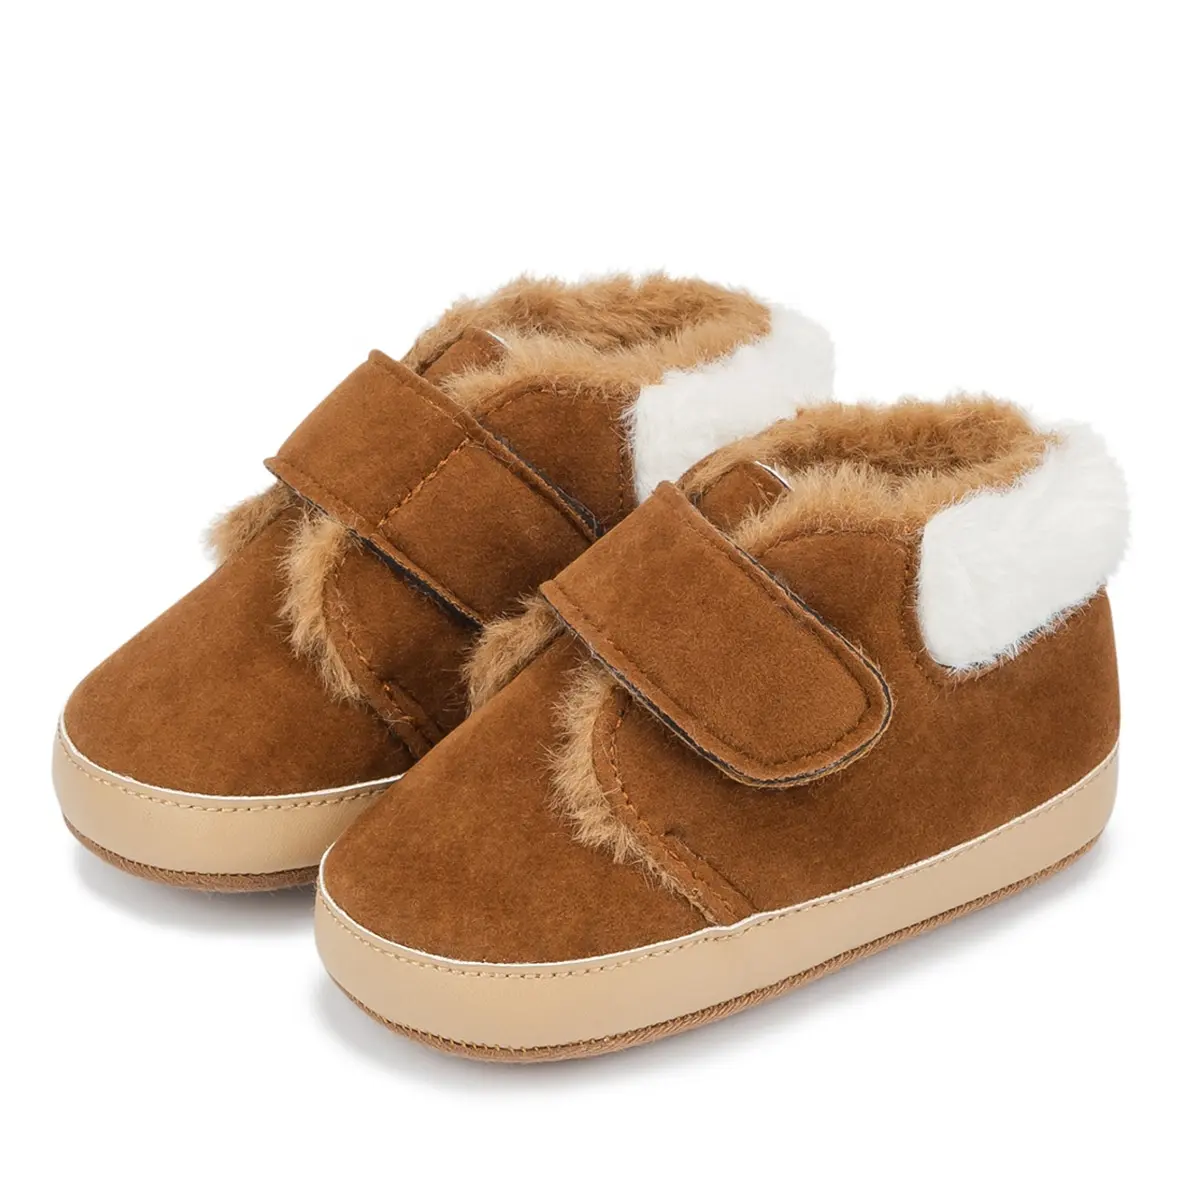 Sıcak satmak açık bebek rahat ayakkabılar sıcak kış sahte geyik derisi üst nemli yerleşimler yumuşak pamuk taban bebek çizmeleri